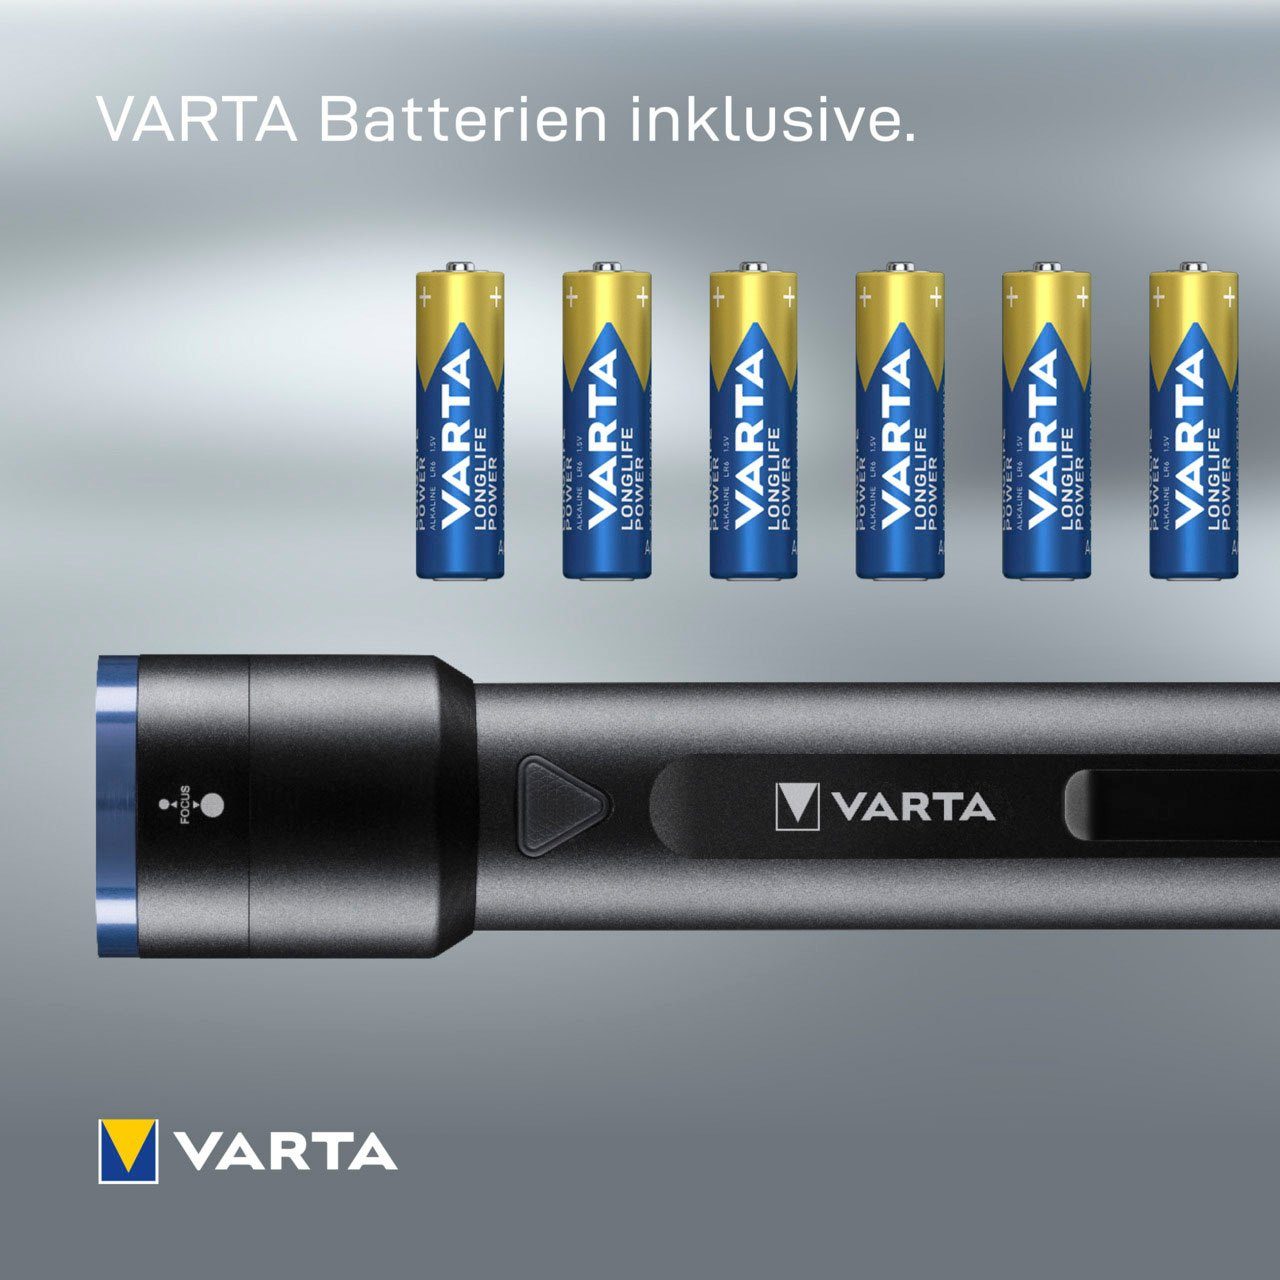 VARTA Taschenlampe Night Cutter F40 Leuchtstärke, 1000 Leuchtmodi, Premium schwarz Lumen vier (Set)